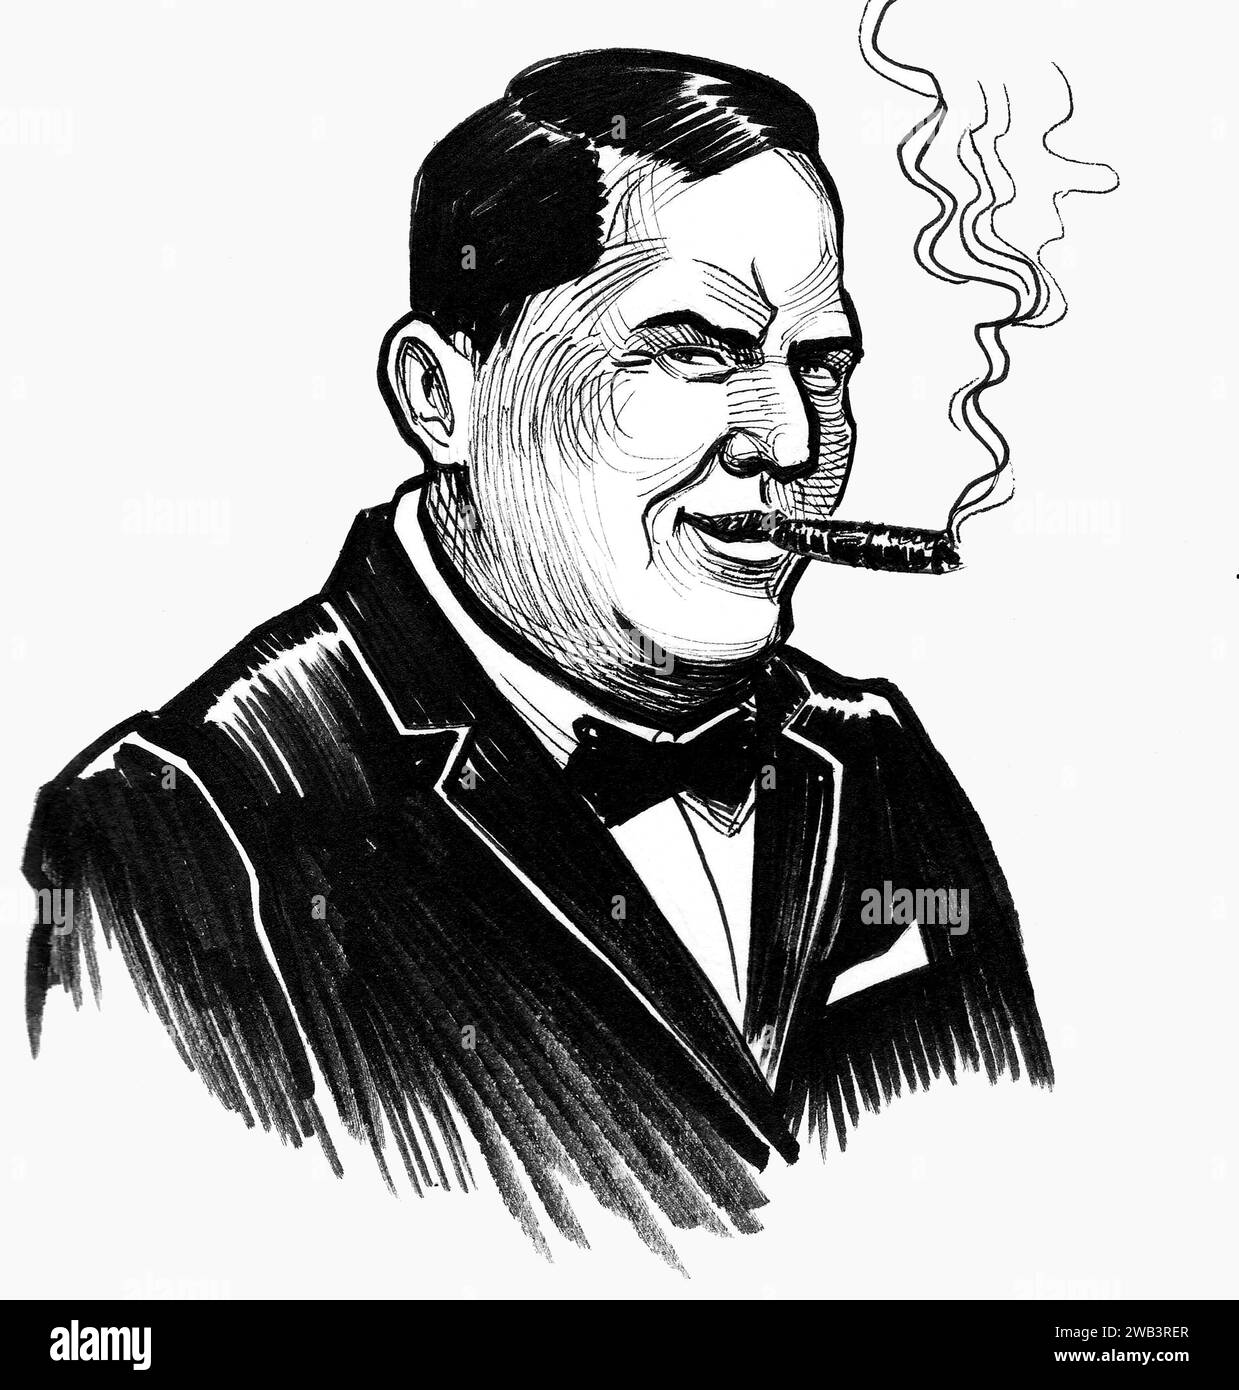 Personaggio di un uomo ricco che fuma un sigaro. Disegno in bianco e nero con inchiostro disegnato a mano Foto Stock